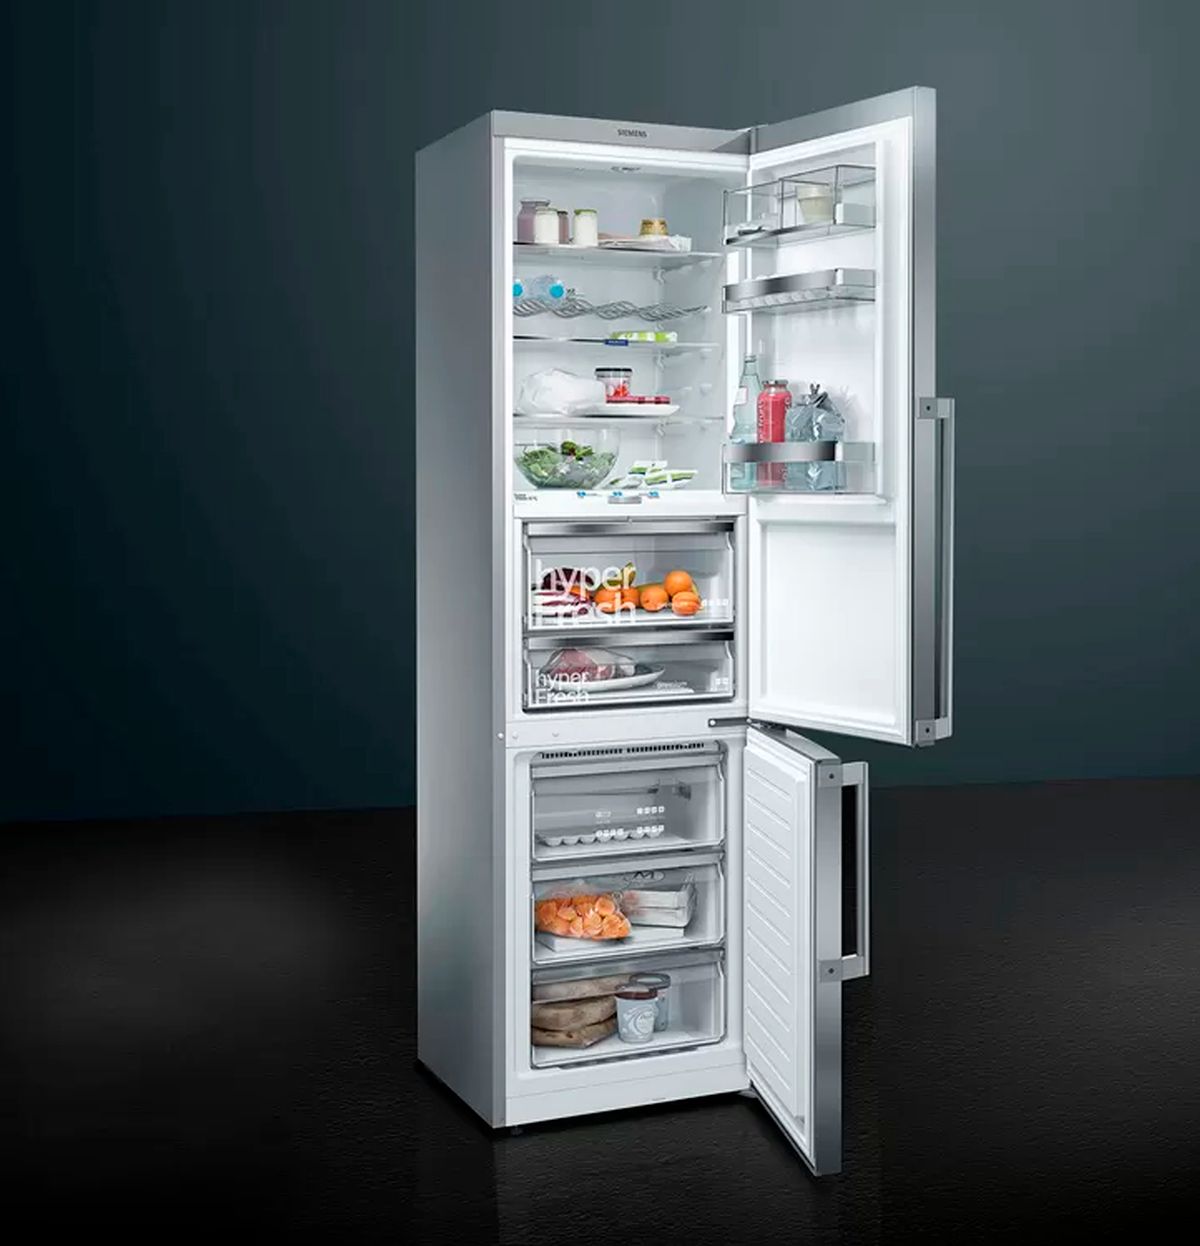 Le differenze tra frigoriferi tradizionali e frigoriferi blast chiller